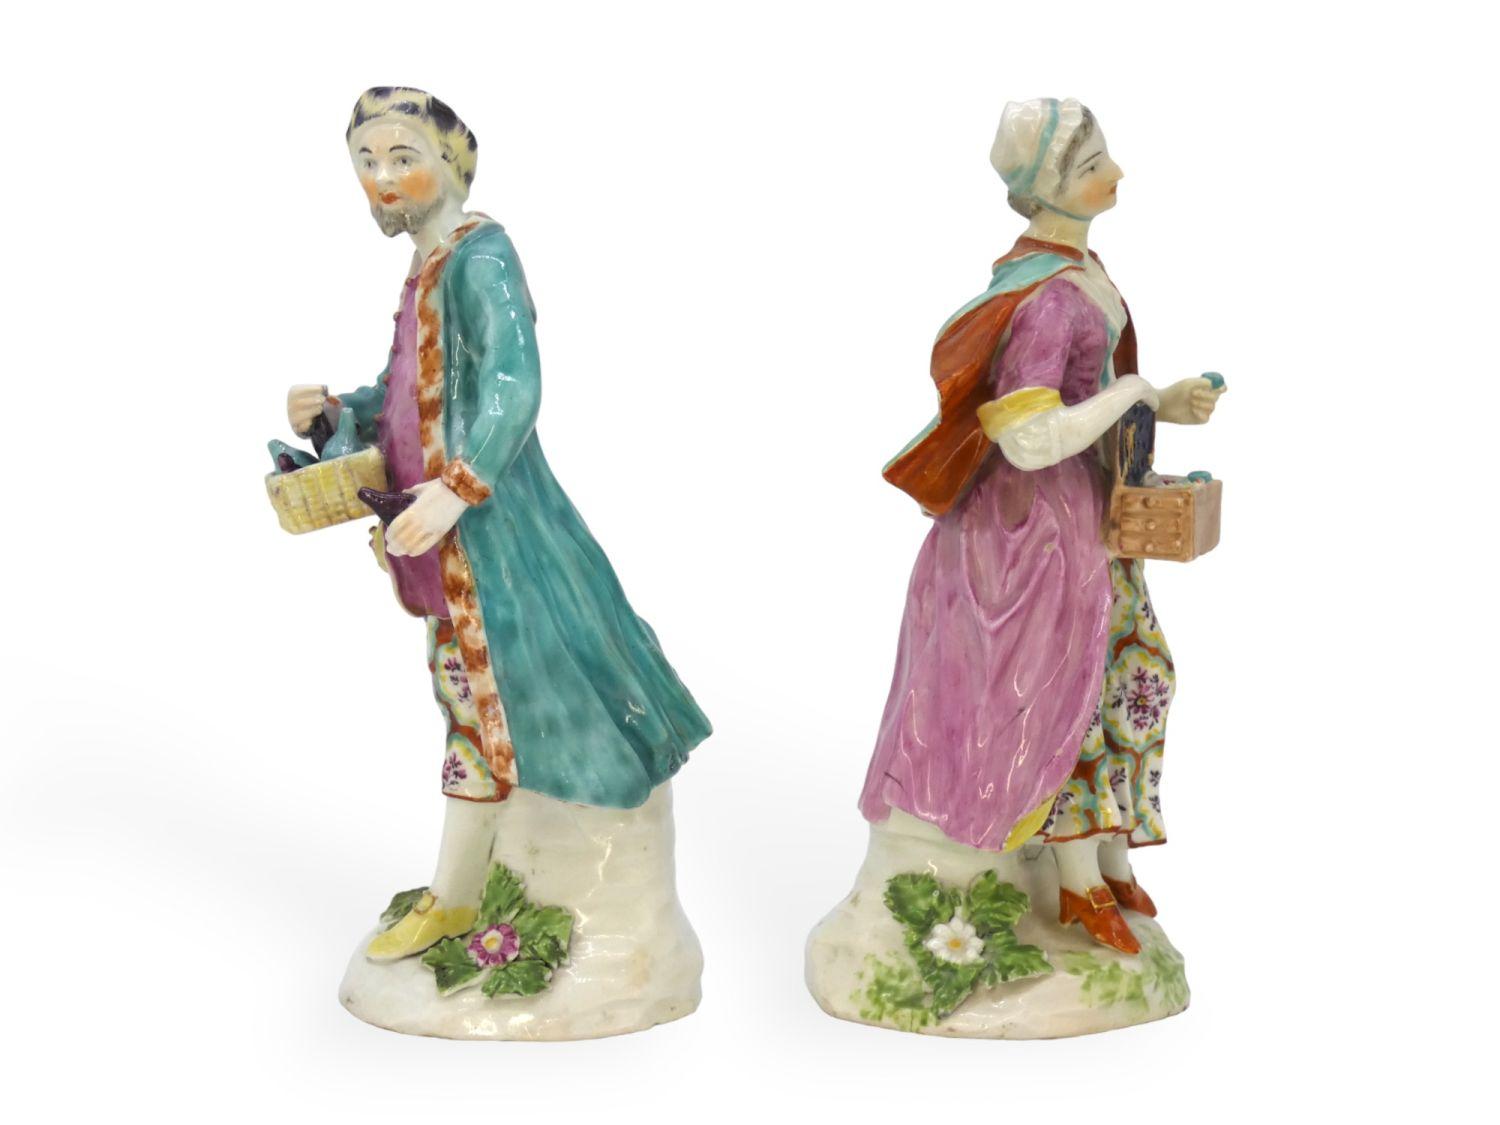 Figures d'un colporteur juif et de sa femme, Derby, Angleterre, vers 1770
Cette paire de figurines en céramique de Derby, datant d'environ 1760, représente un personnage de plus en plus visible dans l'Angleterre du XVIIIe siècle : le colporteur